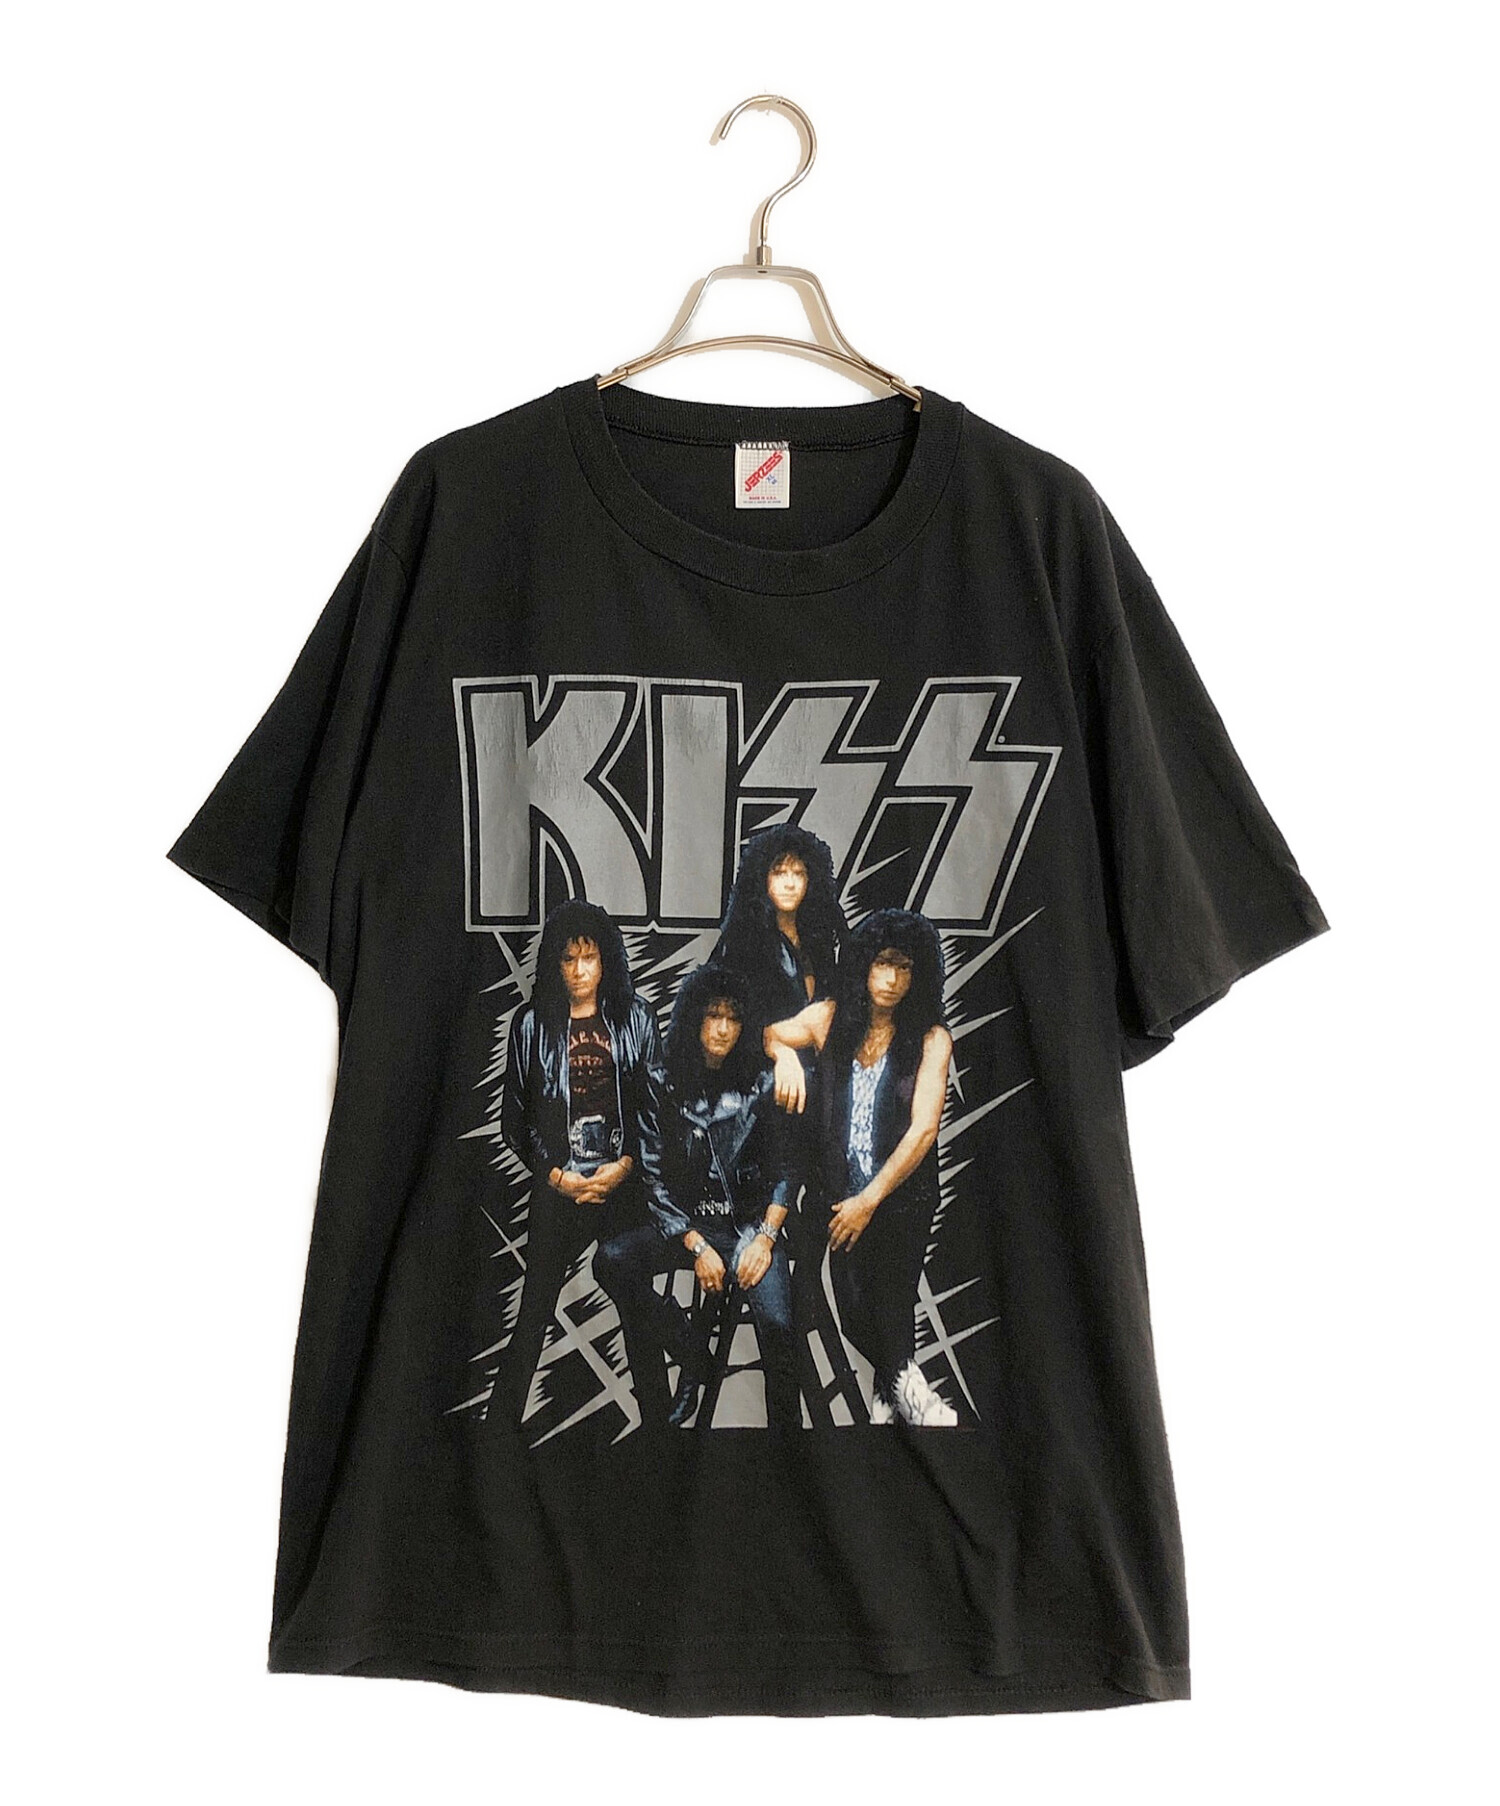 VINTAGE (ヴィンテージ/ビンテージ) KISS バンドTシャツ HOT IN THE SHADE ブラック サイズ:46